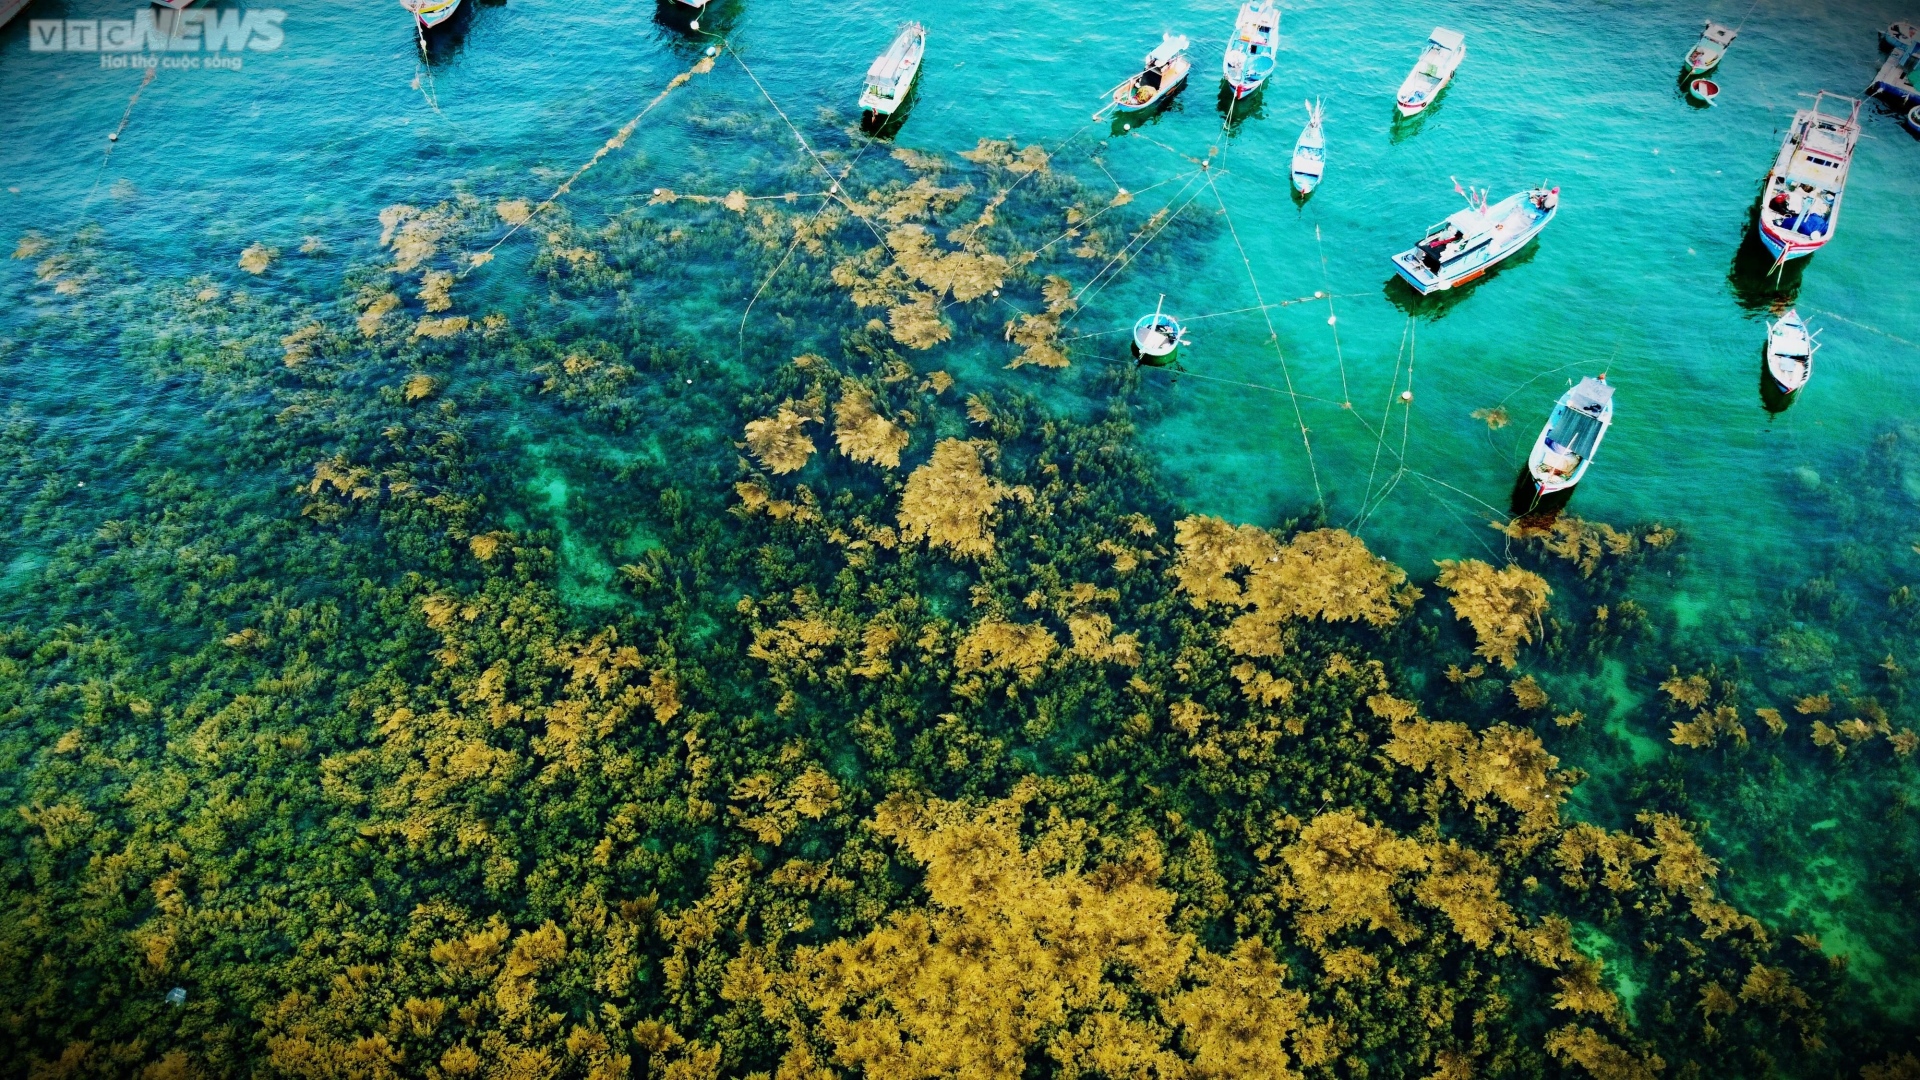 Ngất ngây 'cánh đồng vàng' dưới biển xanh trong ở đảo Hòn Khô, Bình Định - Ảnh 3.